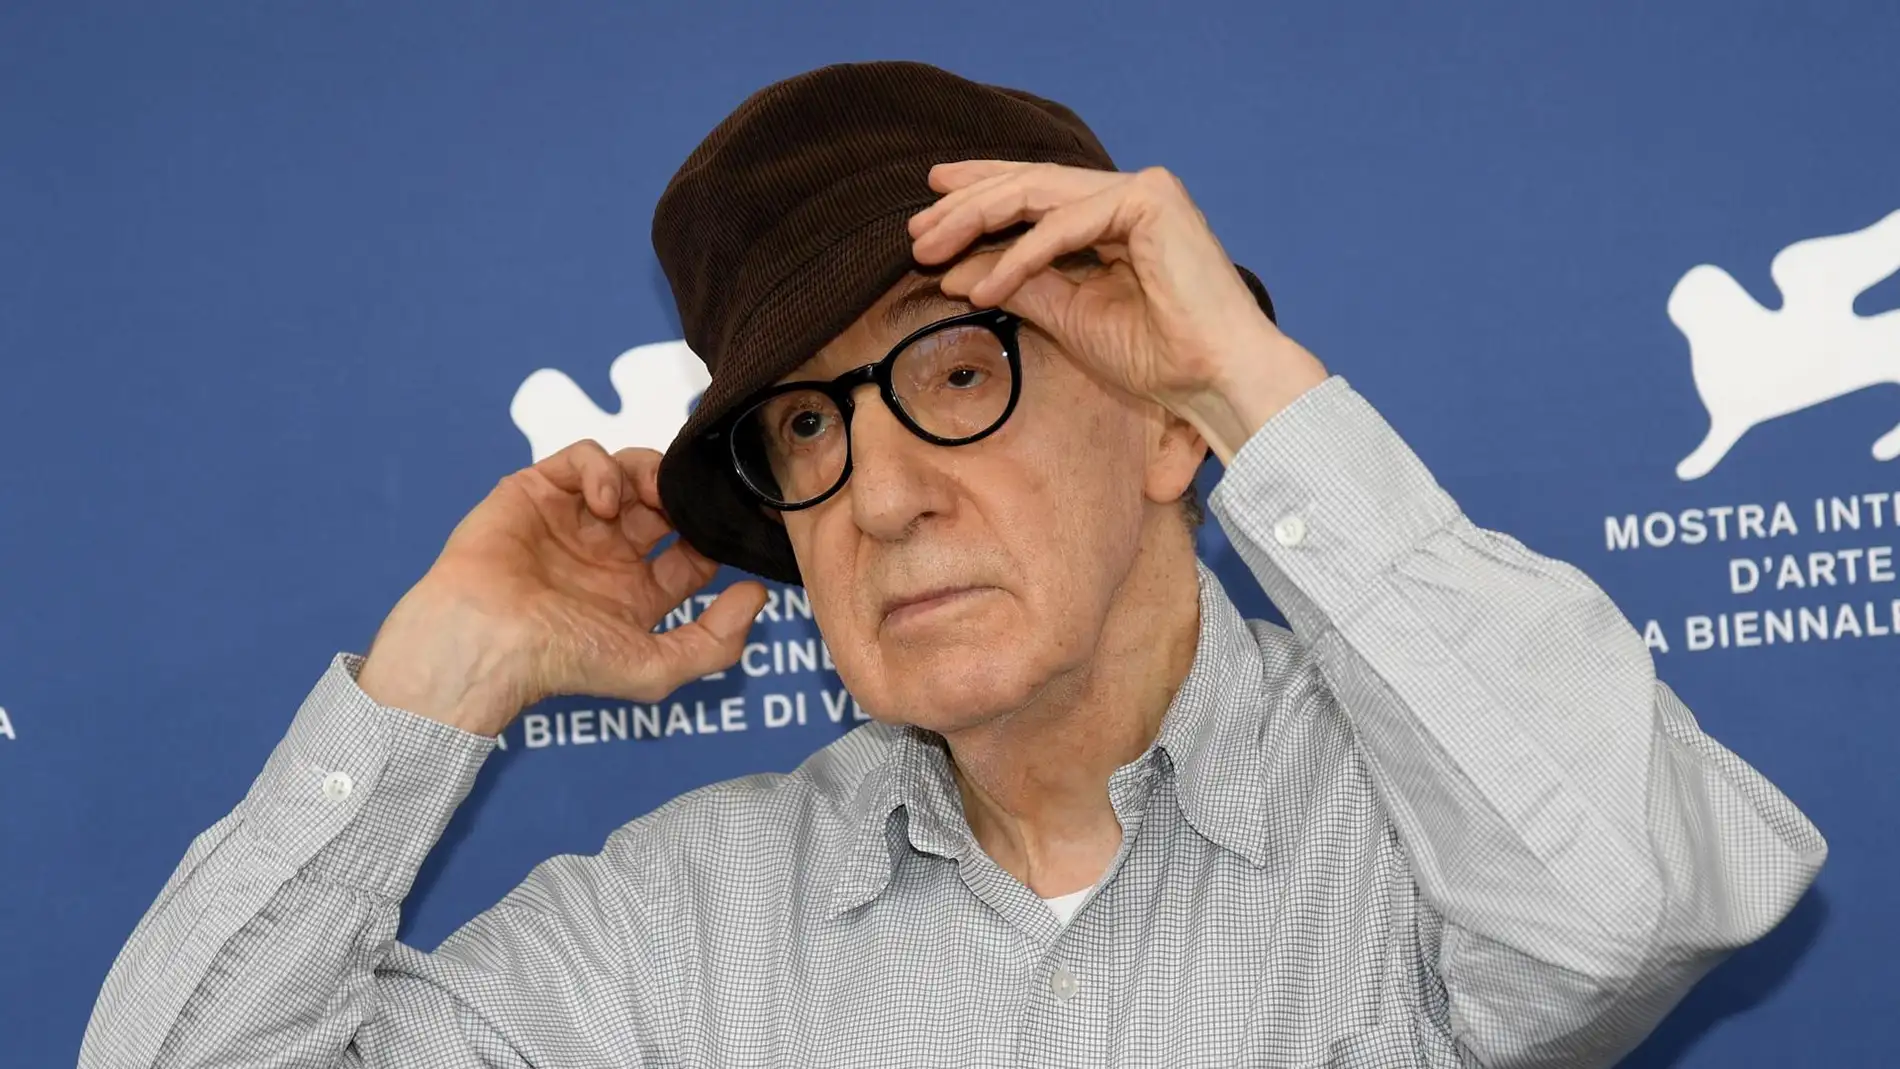 Woody Allen, sobre Rubiales: "No la estaba violando, era sólo un beso. ¿Qué hay de malo en eso?"